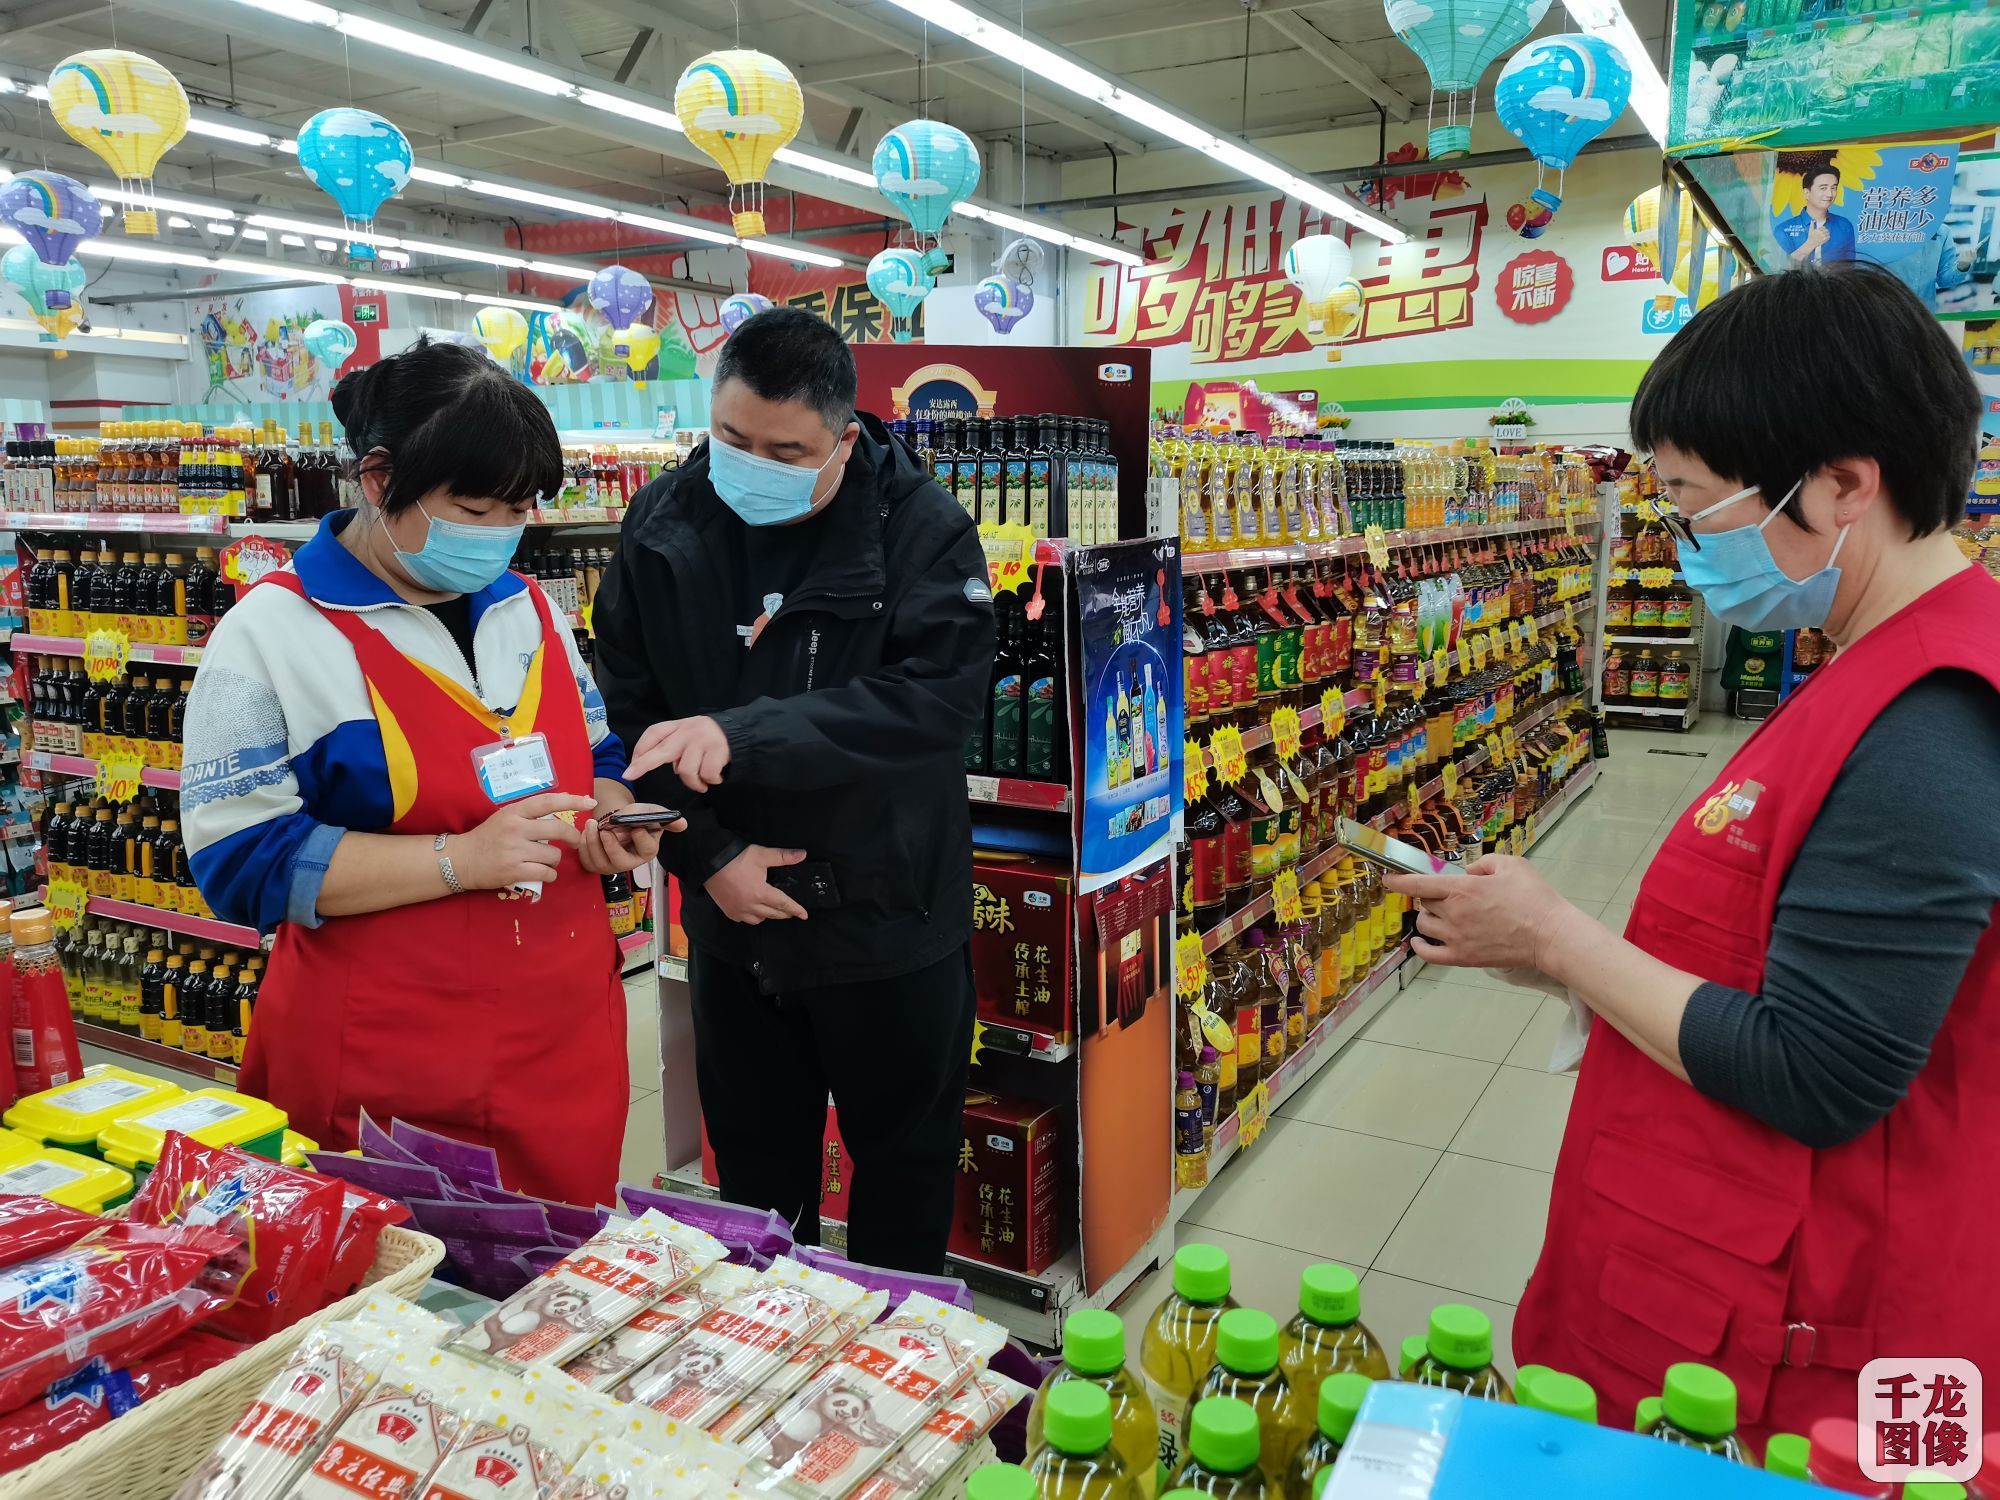 北京怀柔生活必需品供应足价格稳 重点连锁超市3倍备货